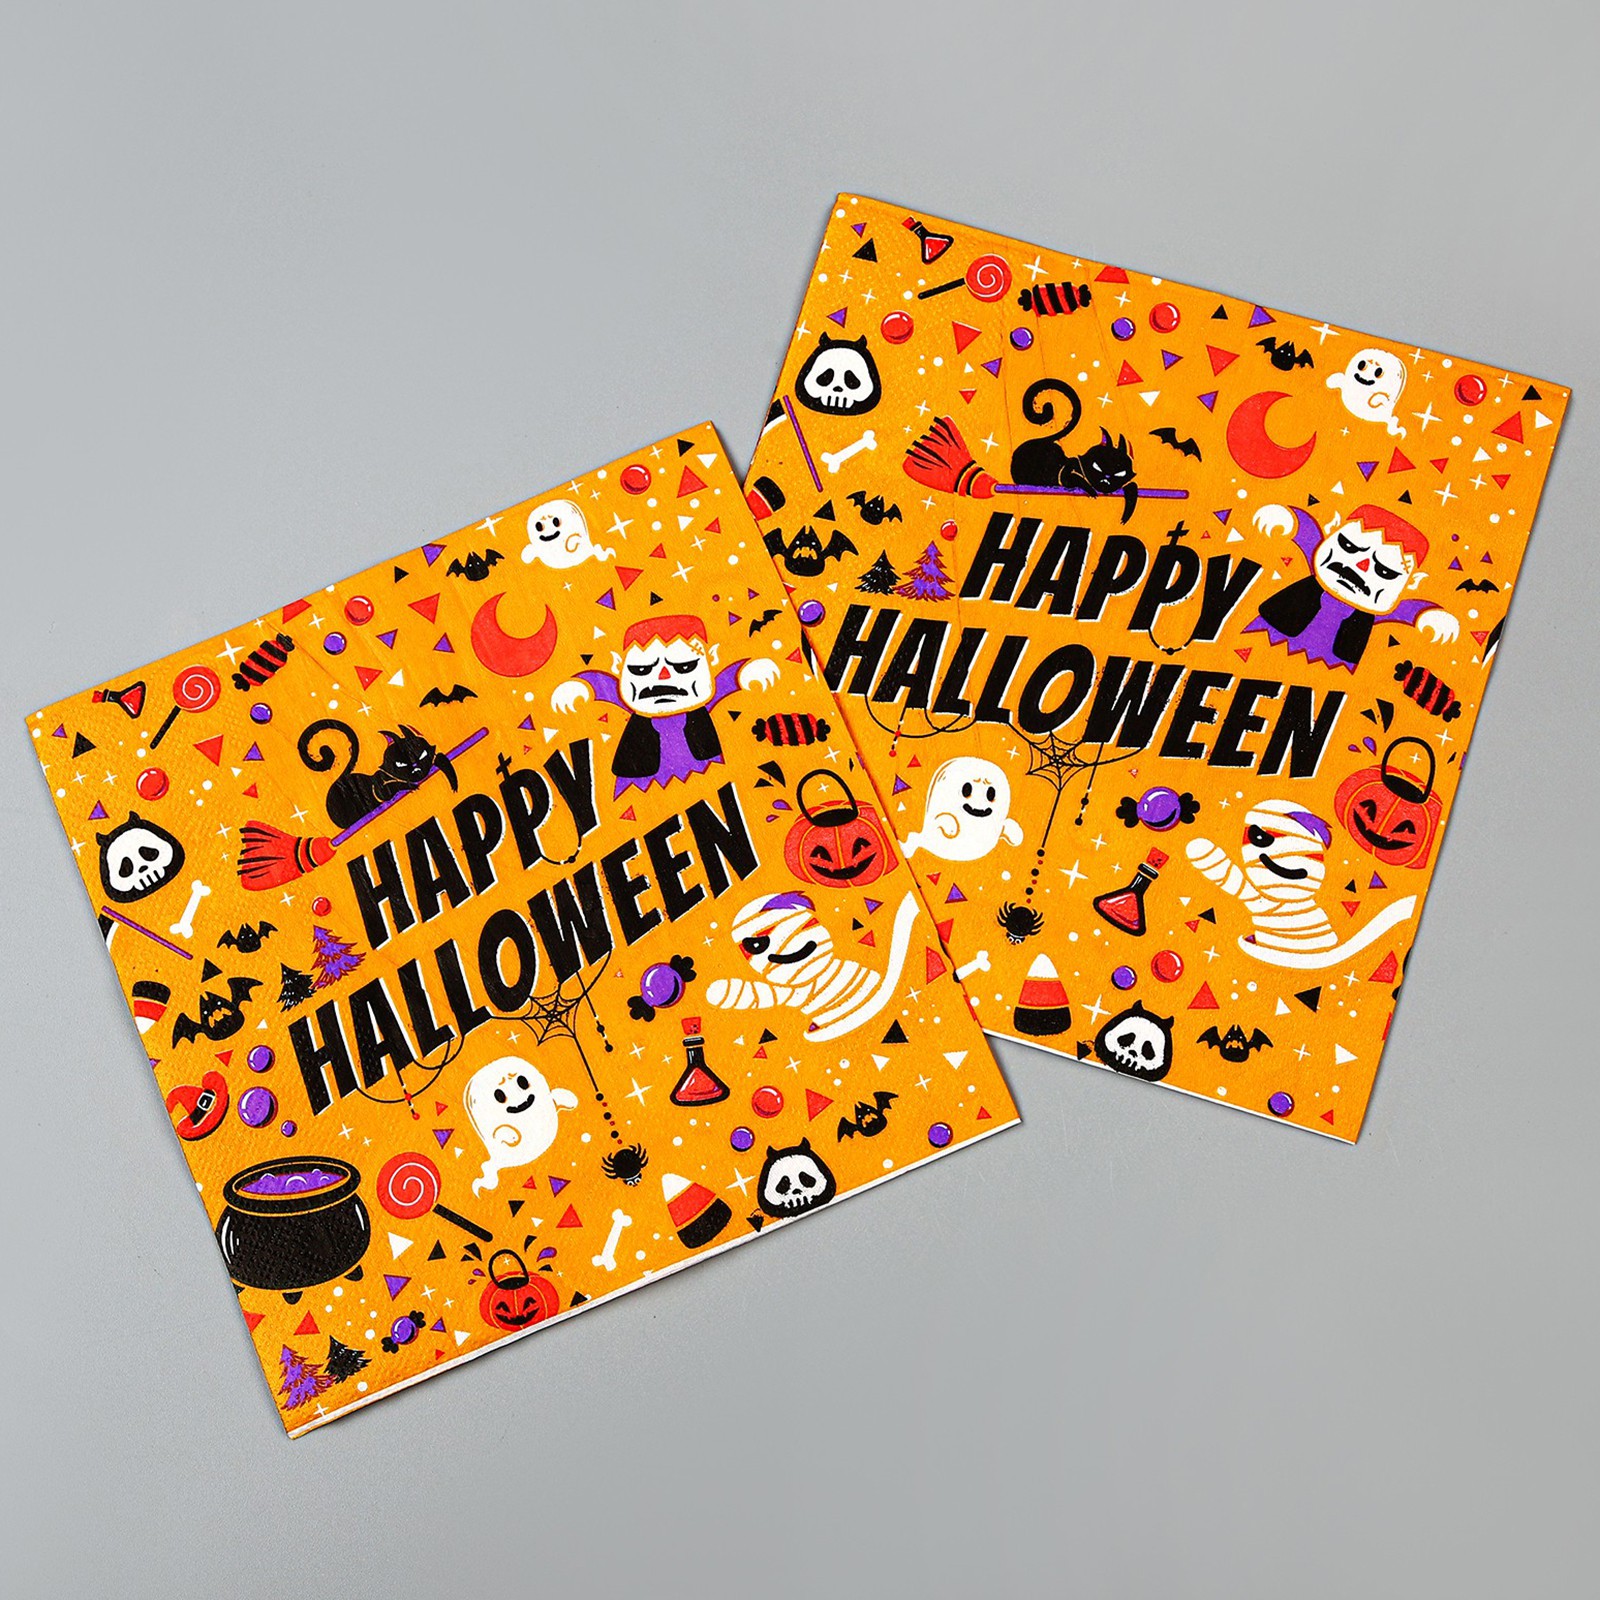 Салфетки Страна карнавалия бумажные «Хэллоуин» в наборе 20 шт. - фото 1